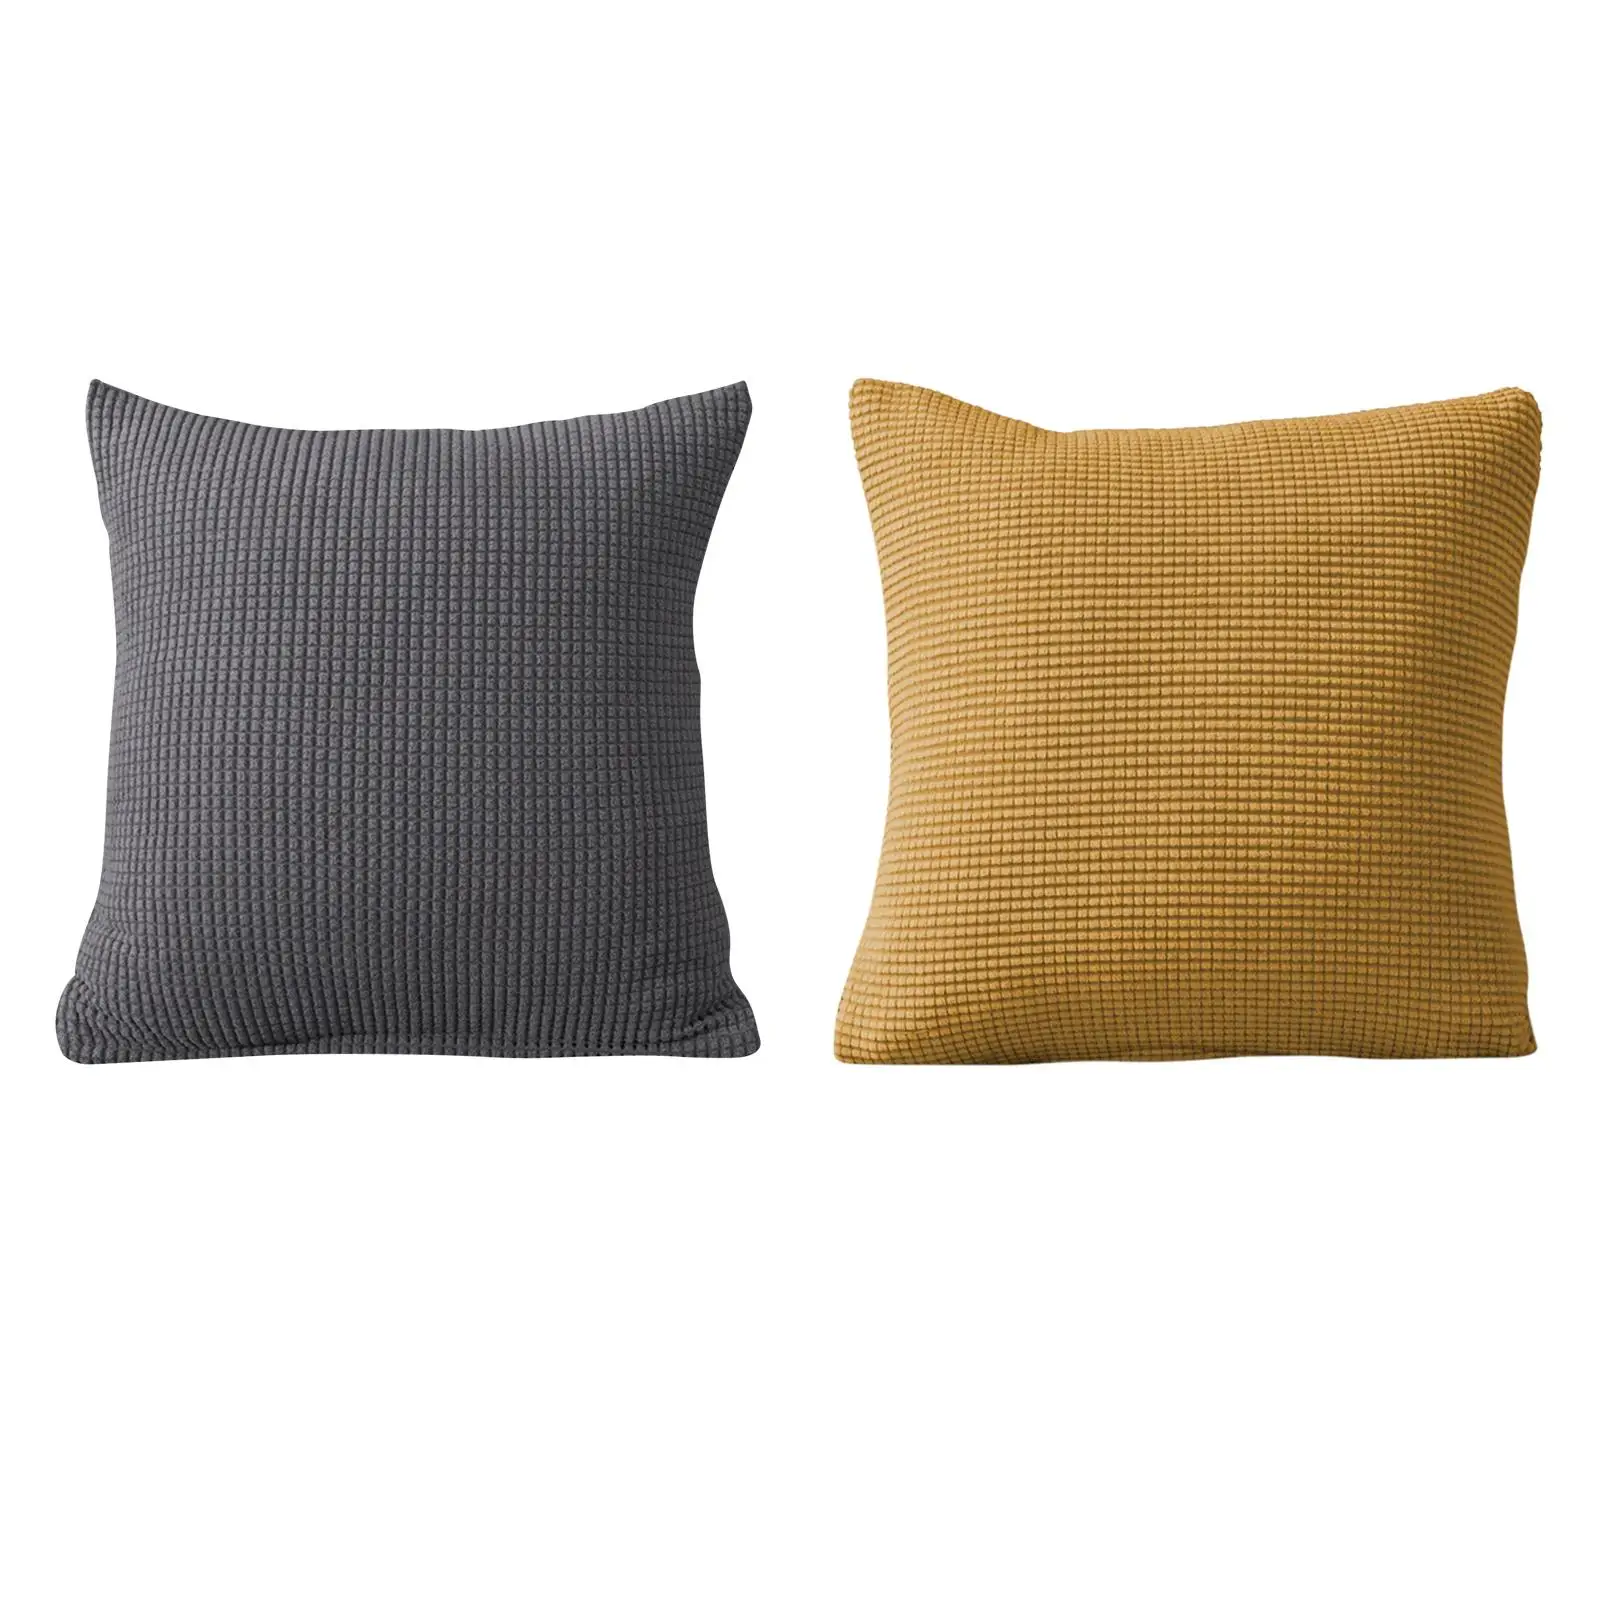 Throw Pillow Case Sofa Pillowcase Comfortable Decorative Solid Color for Car